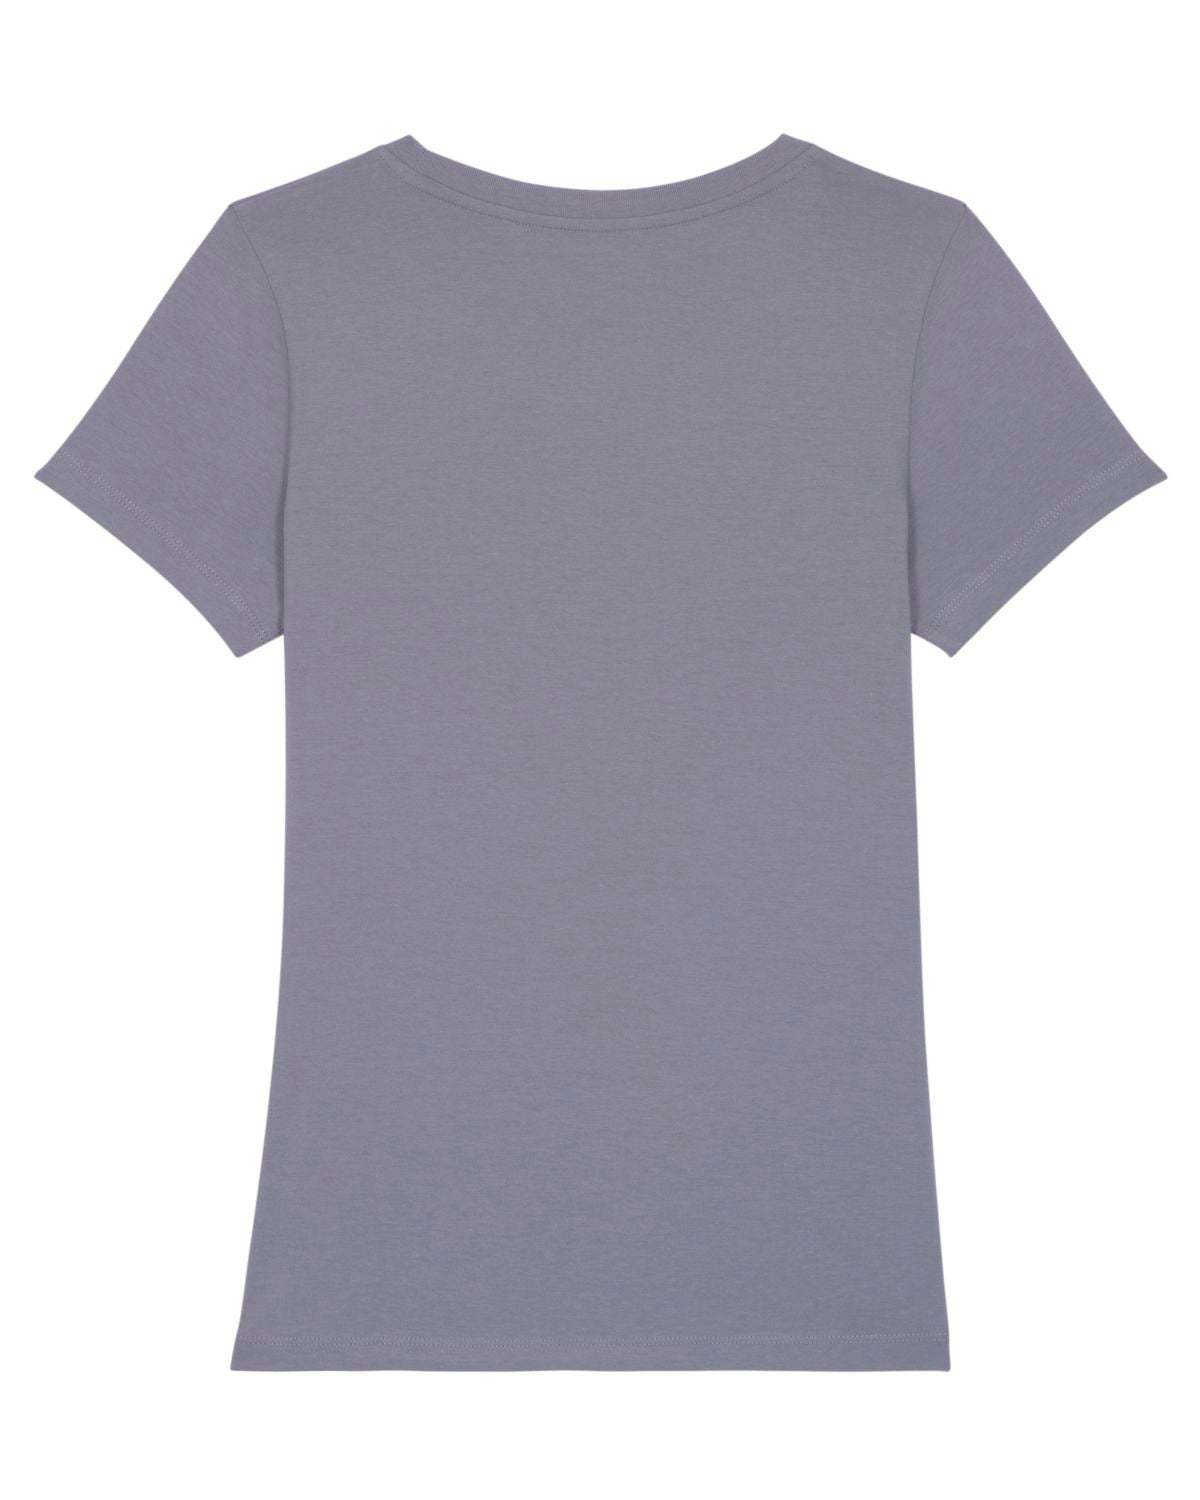 DEERN Shirt lava grey L